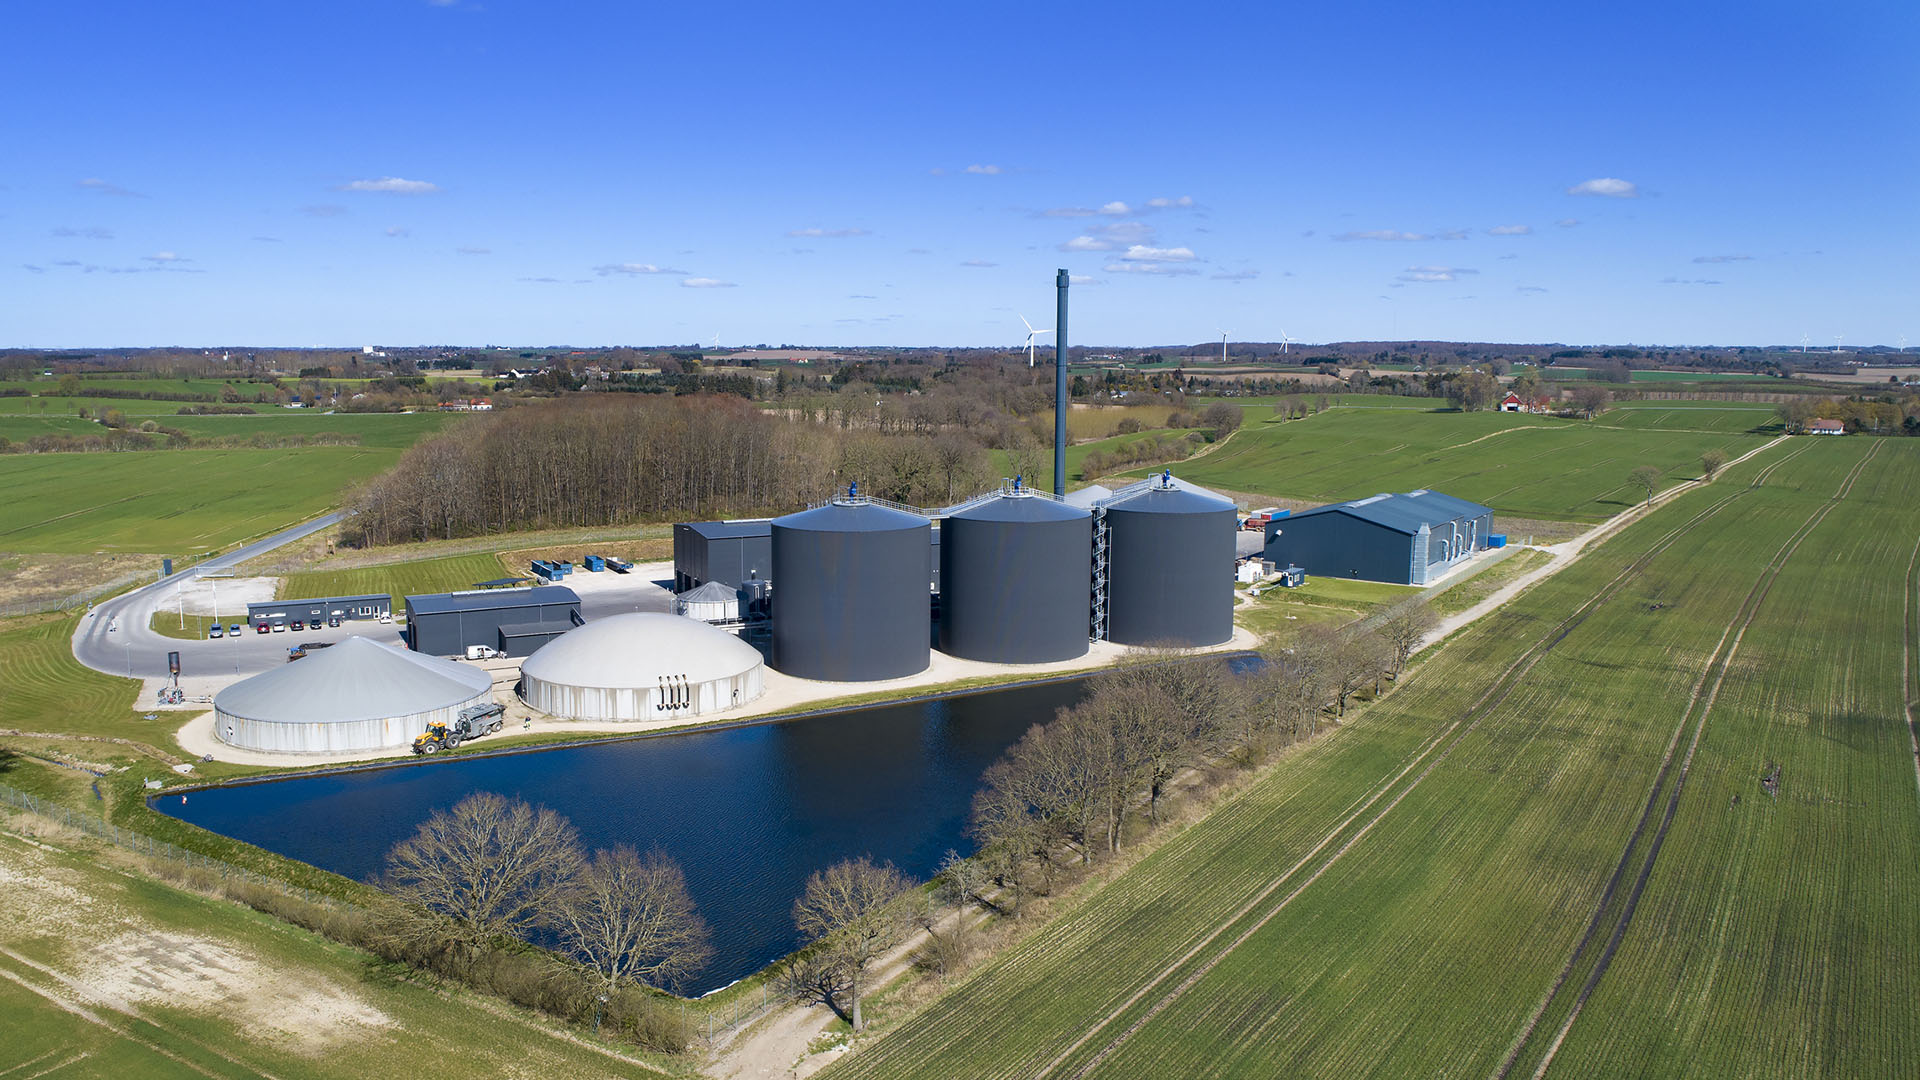 Skal den industri flytte til udlandet? - Biogas Danmark